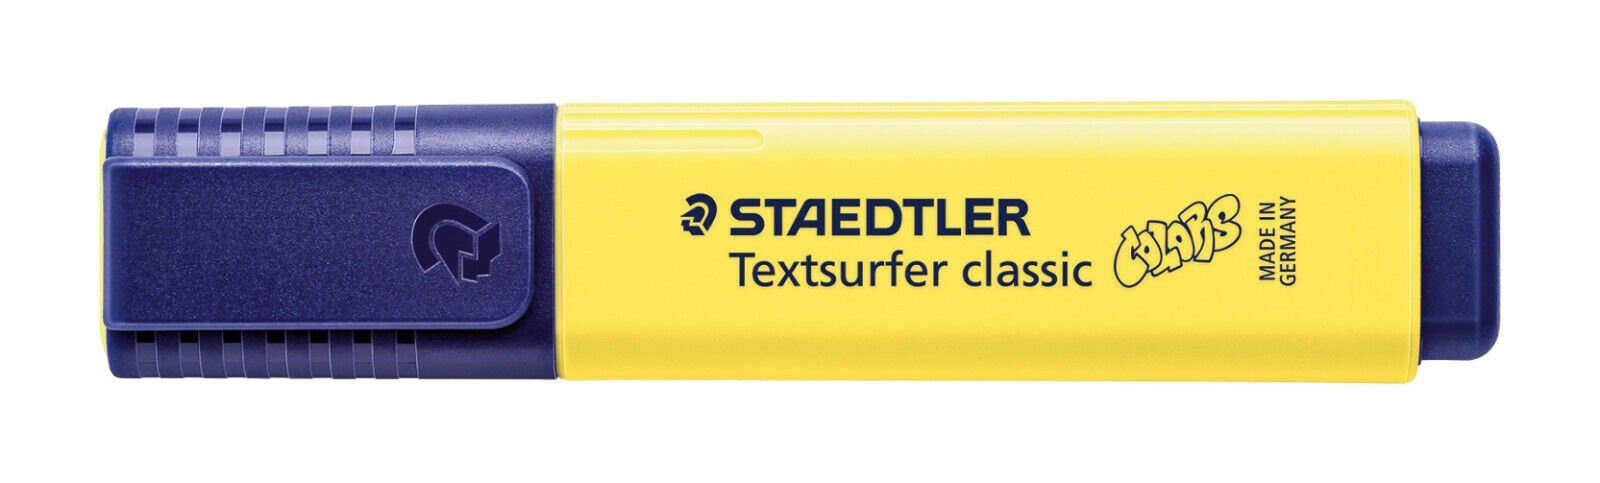 STAEDTLER Marker Staedtler Textsurfer classic colors sonnenblume 364 C-100 Leuchtstift, INK JET SAFE | Marker